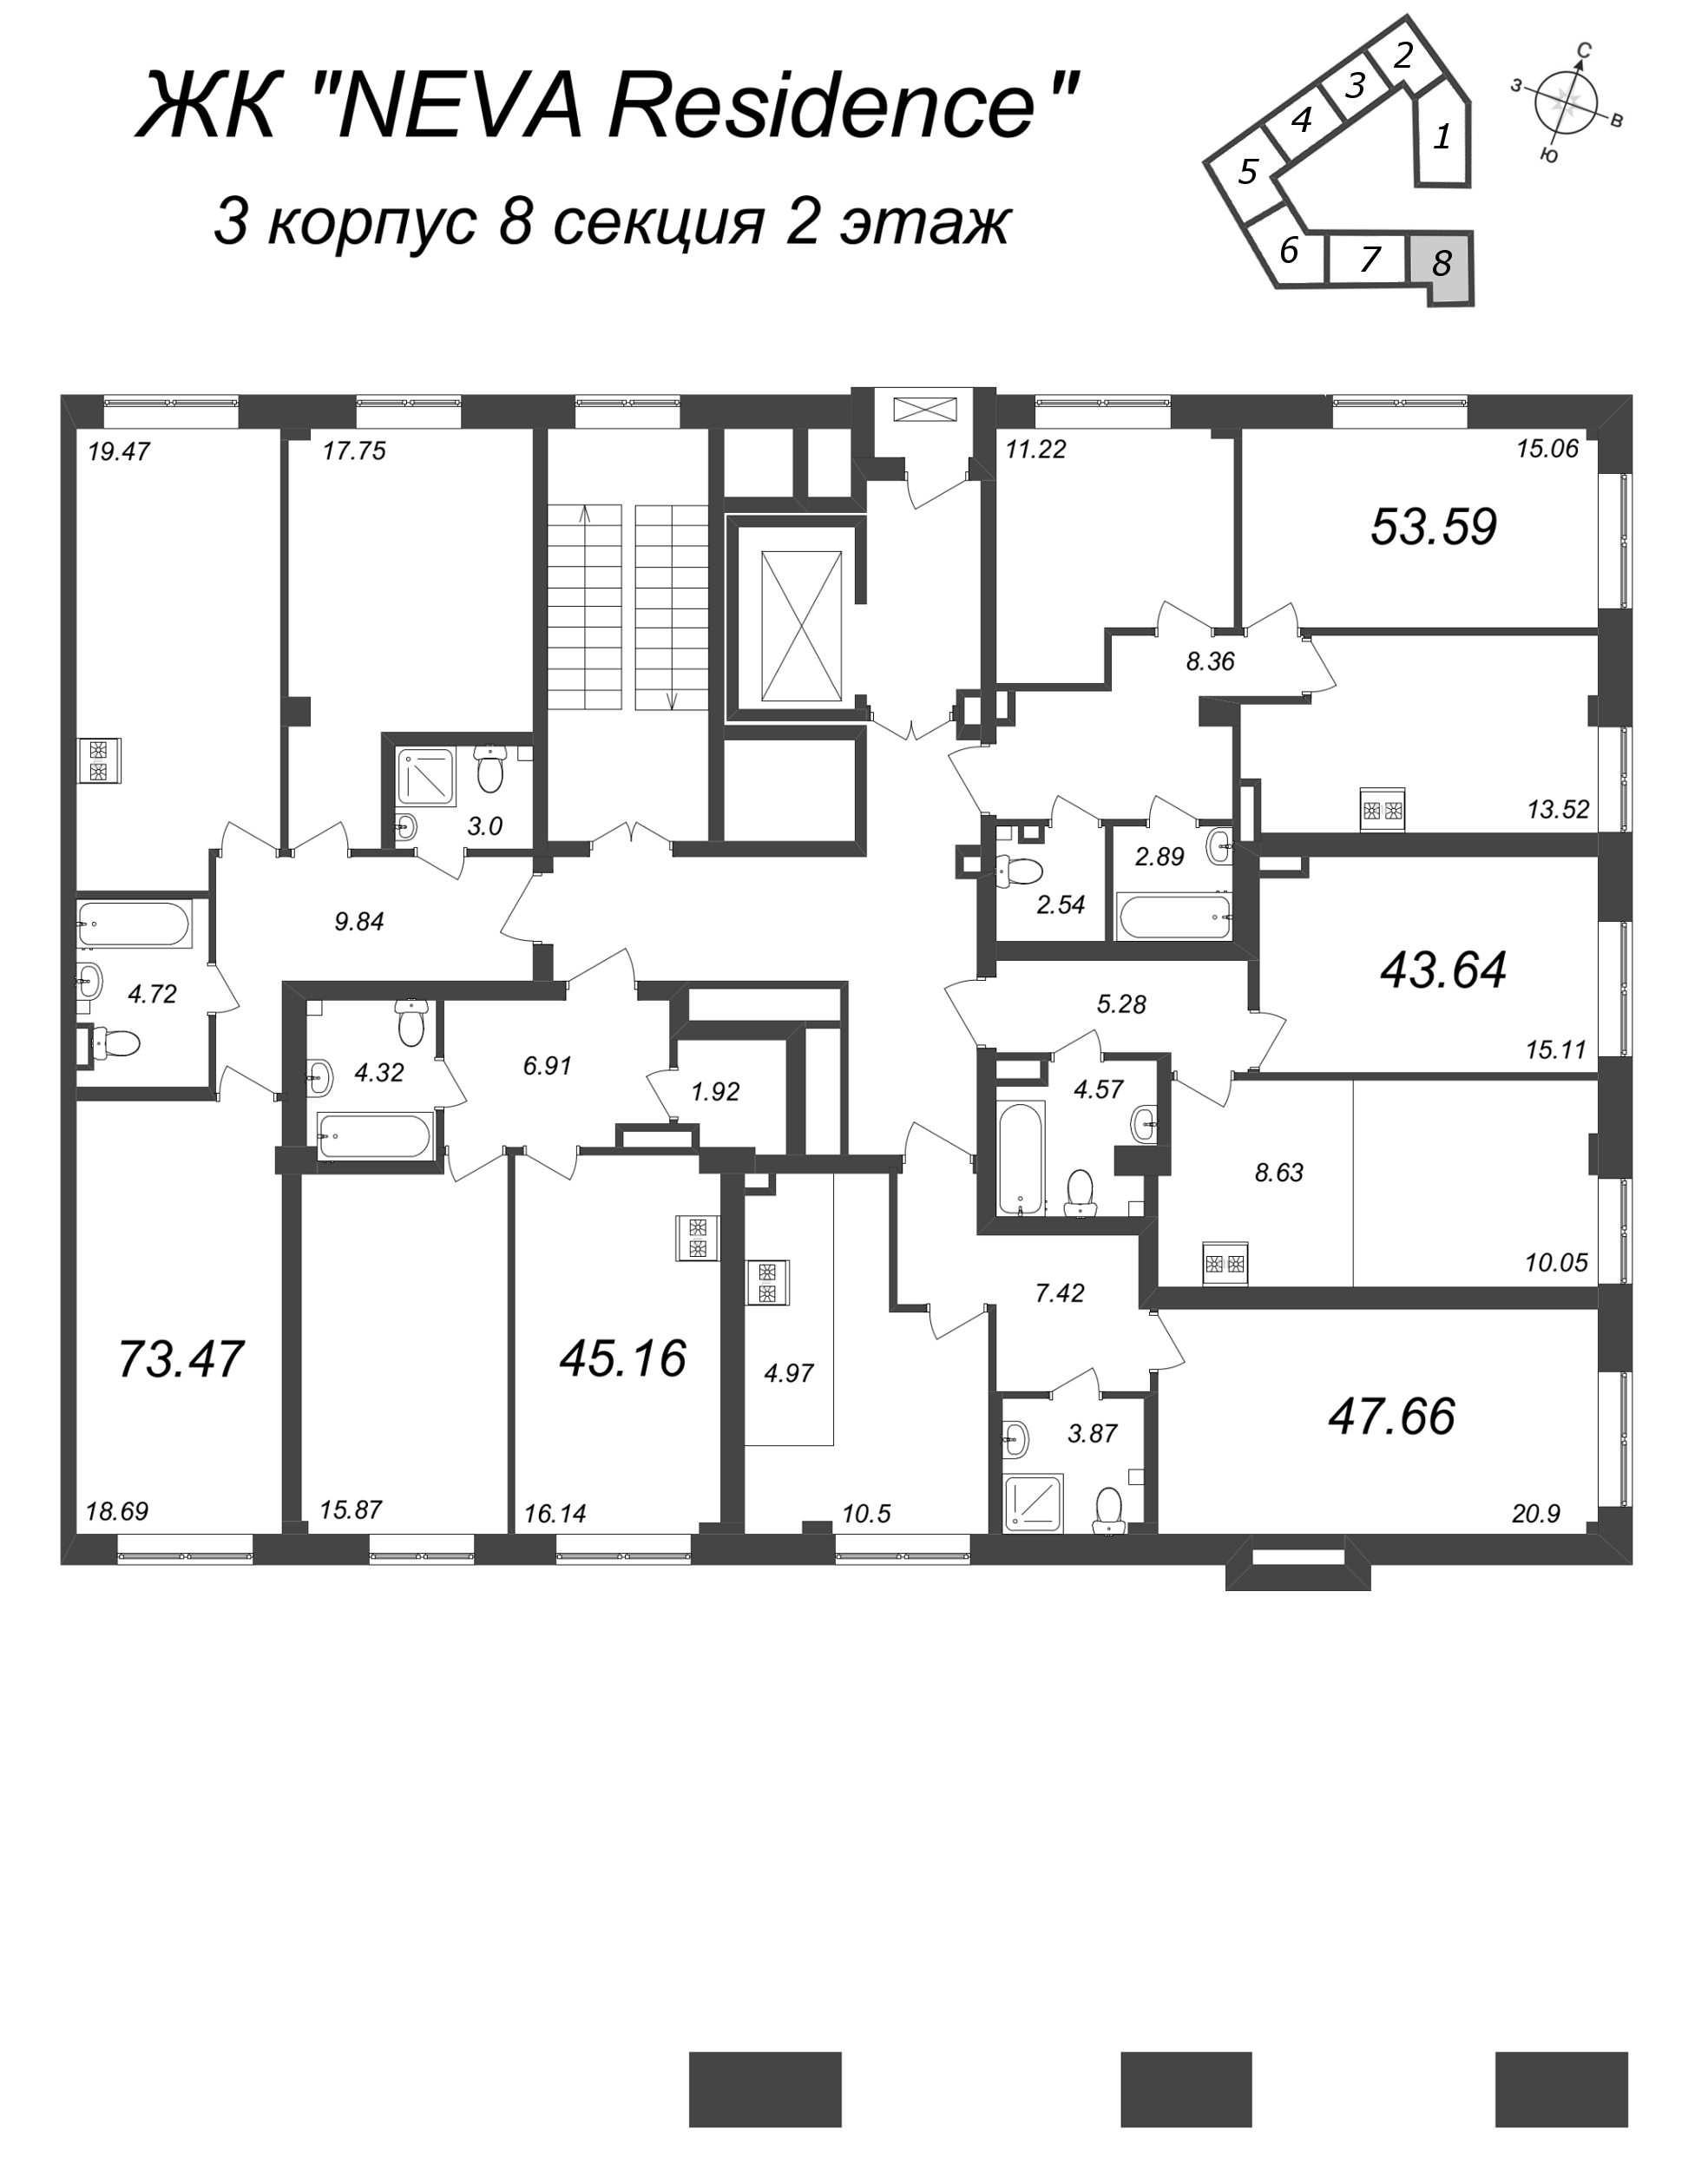 2-комнатная (Евро) квартира, 47.66 м² в ЖК "Neva Residence" - планировка этажа